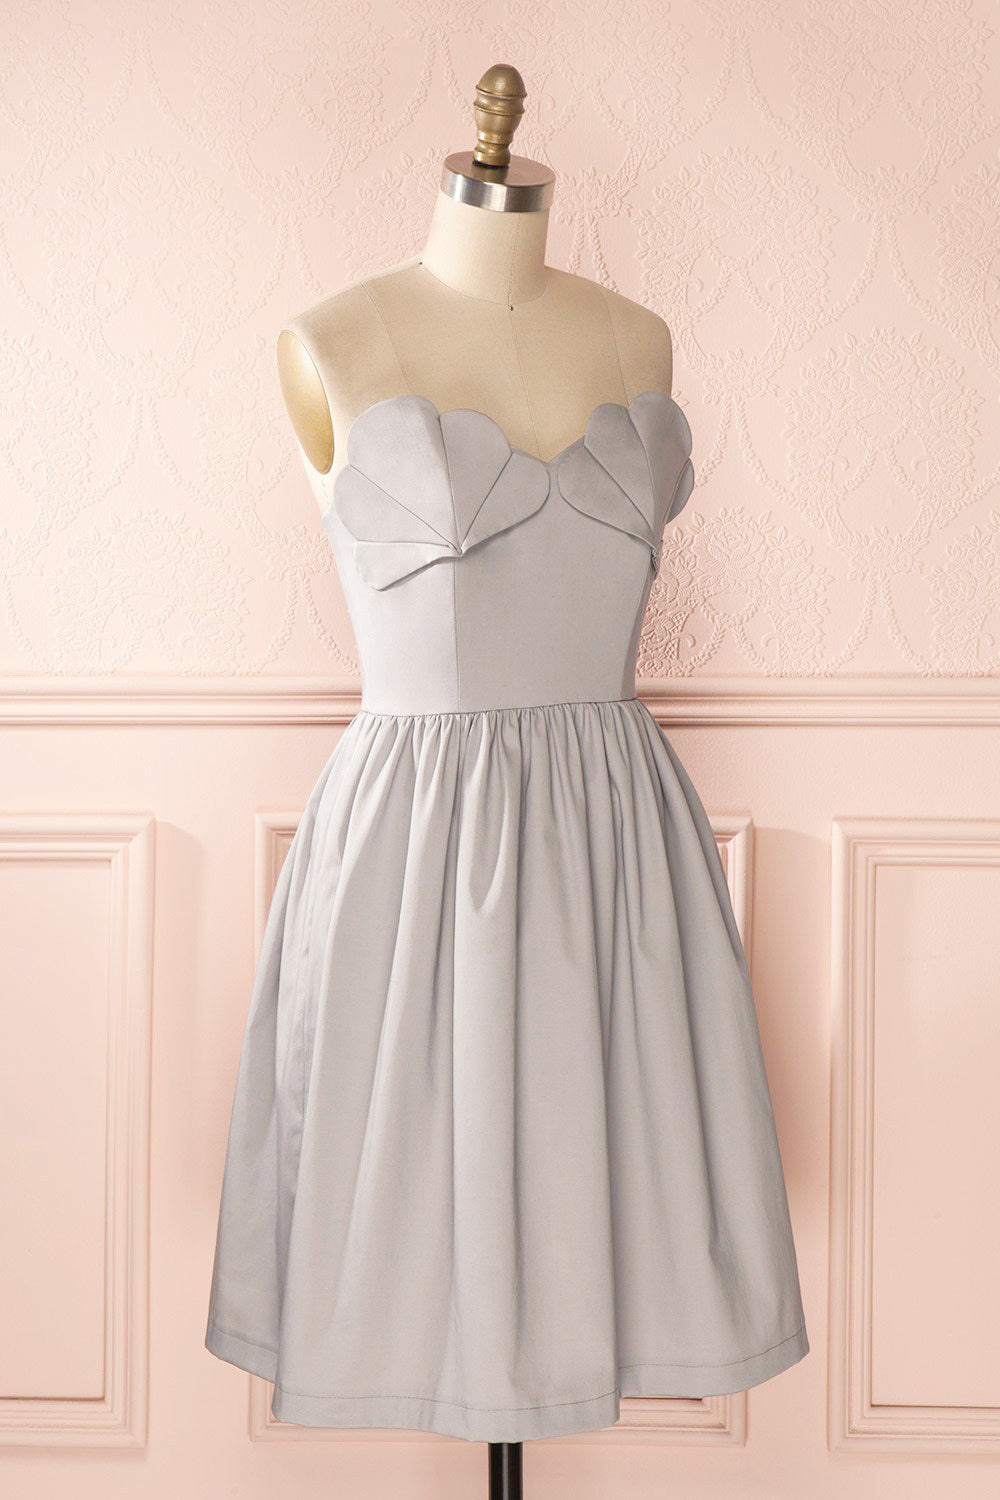 Ariel Lune - Light grey sea shell bustier dress